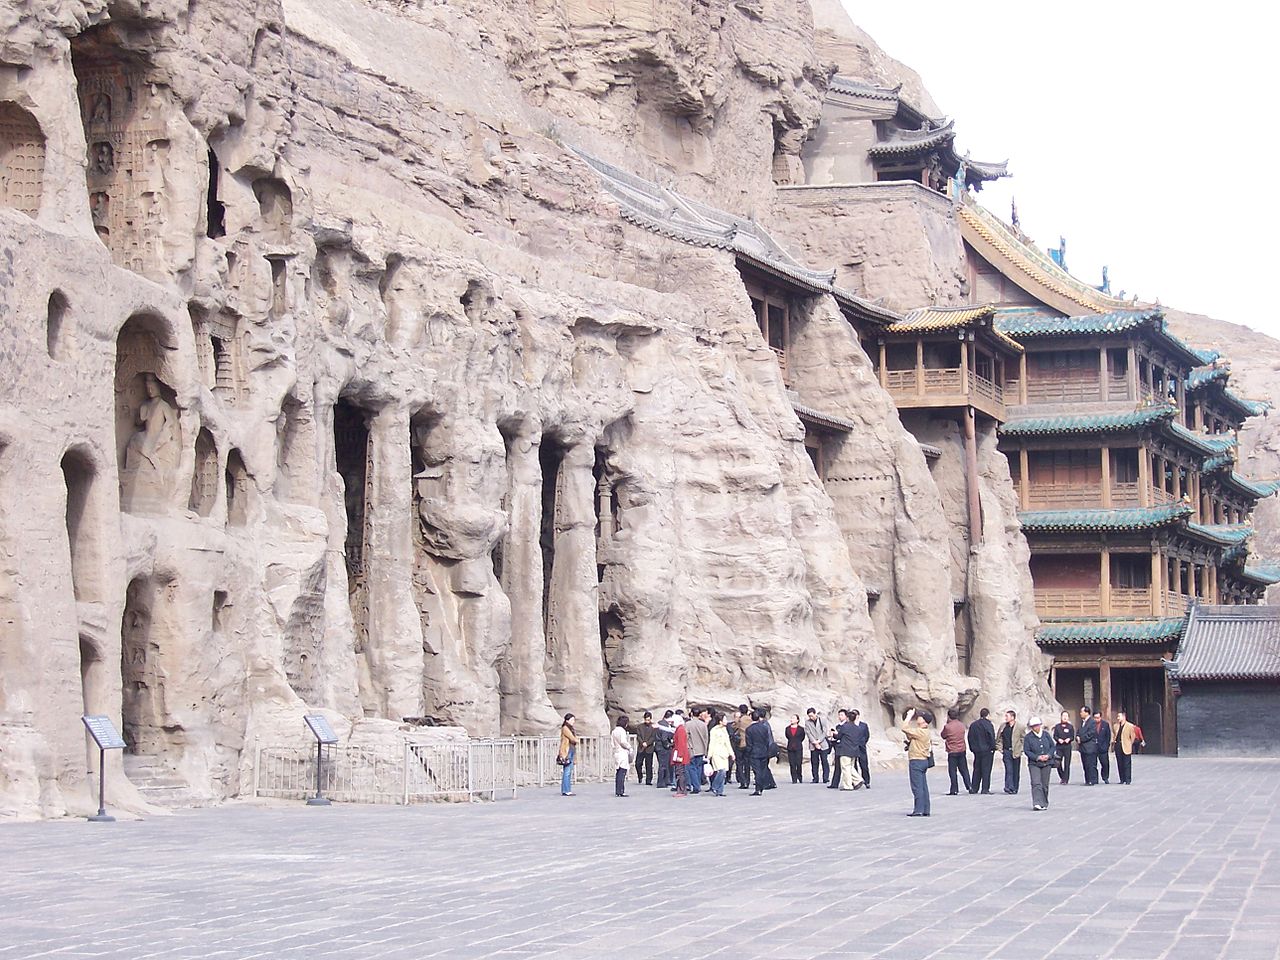 Yungang Grottoes, Datong, China (McKay, wikimedia commons)